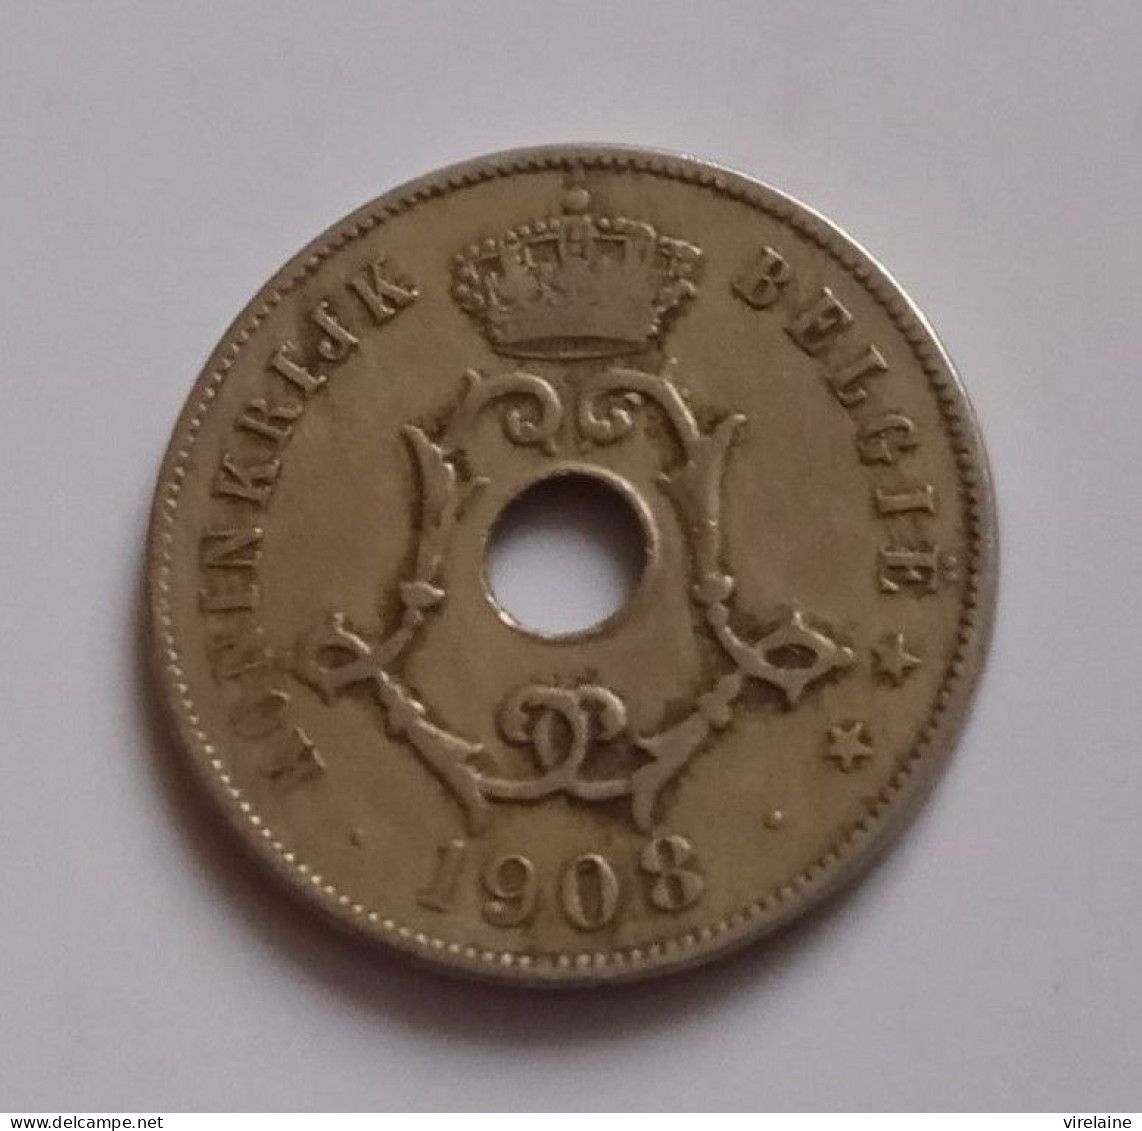 BELGIQUE 25 CENTS 1908 (B10 04) - 25 Cent